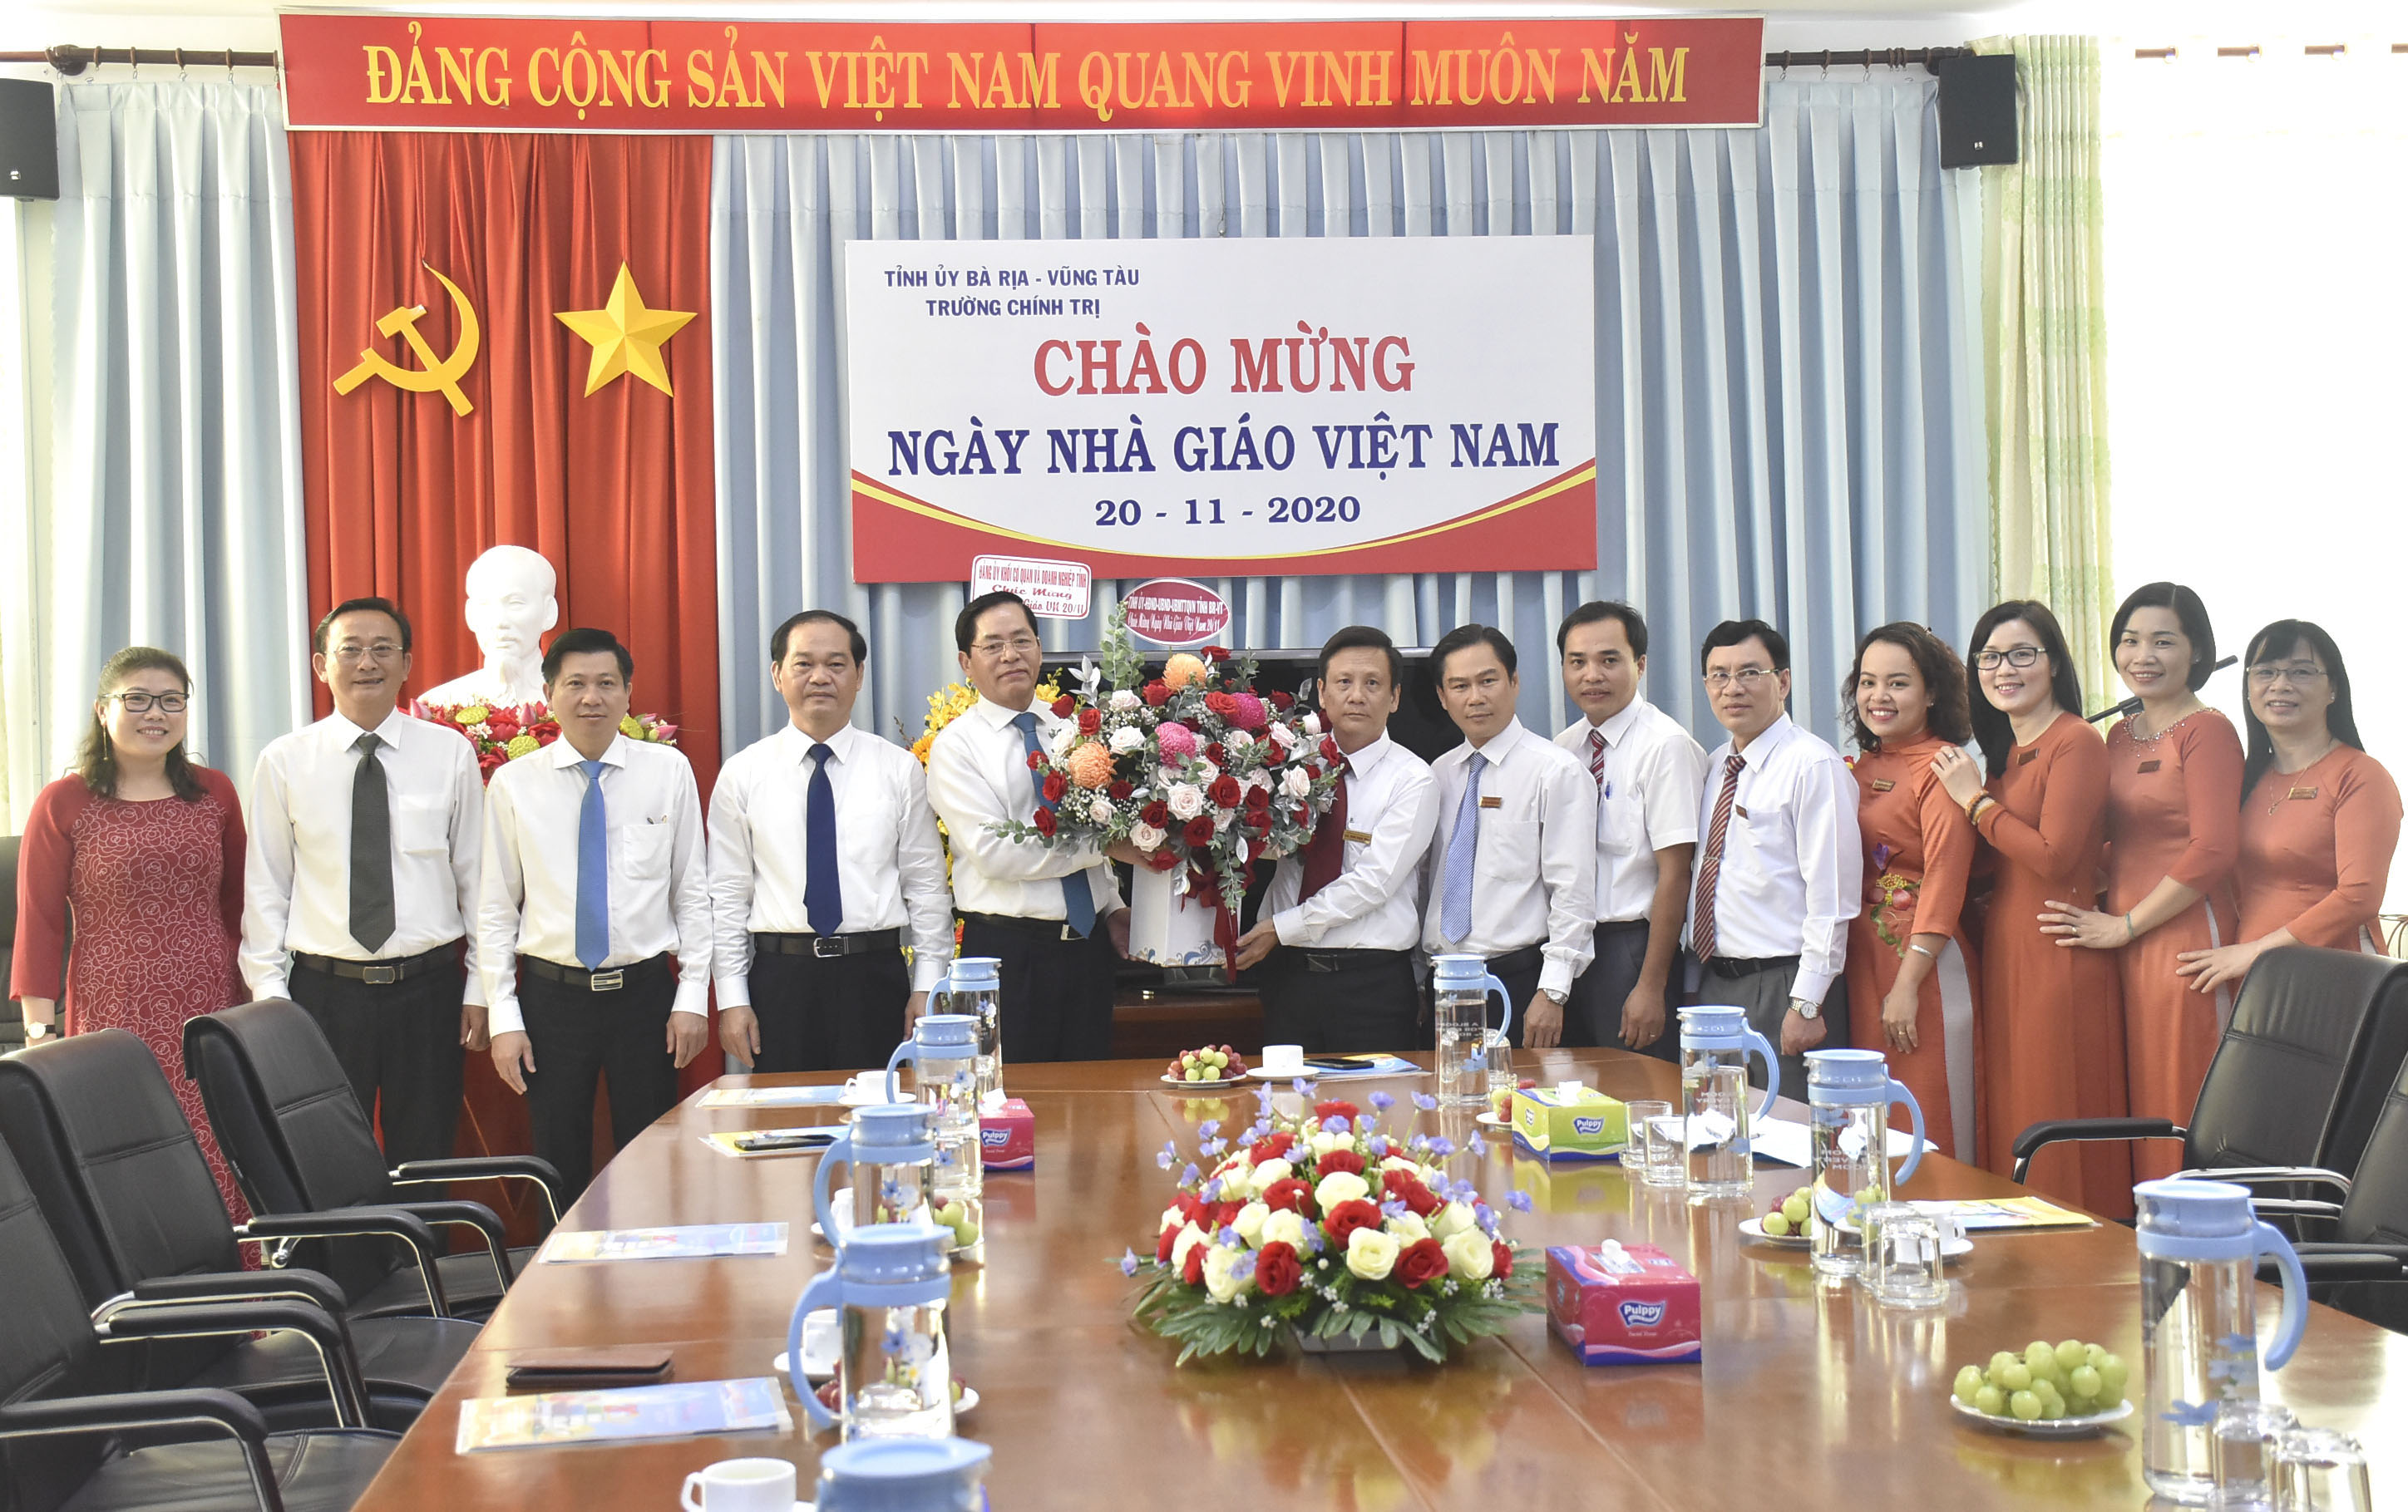 Ông Phạm Viết Thanh, Ủy viên Trung ương Đảng, Bí thư Tỉnh ủy tặng hoa chúc mừng Trường Chính trị tỉnh.